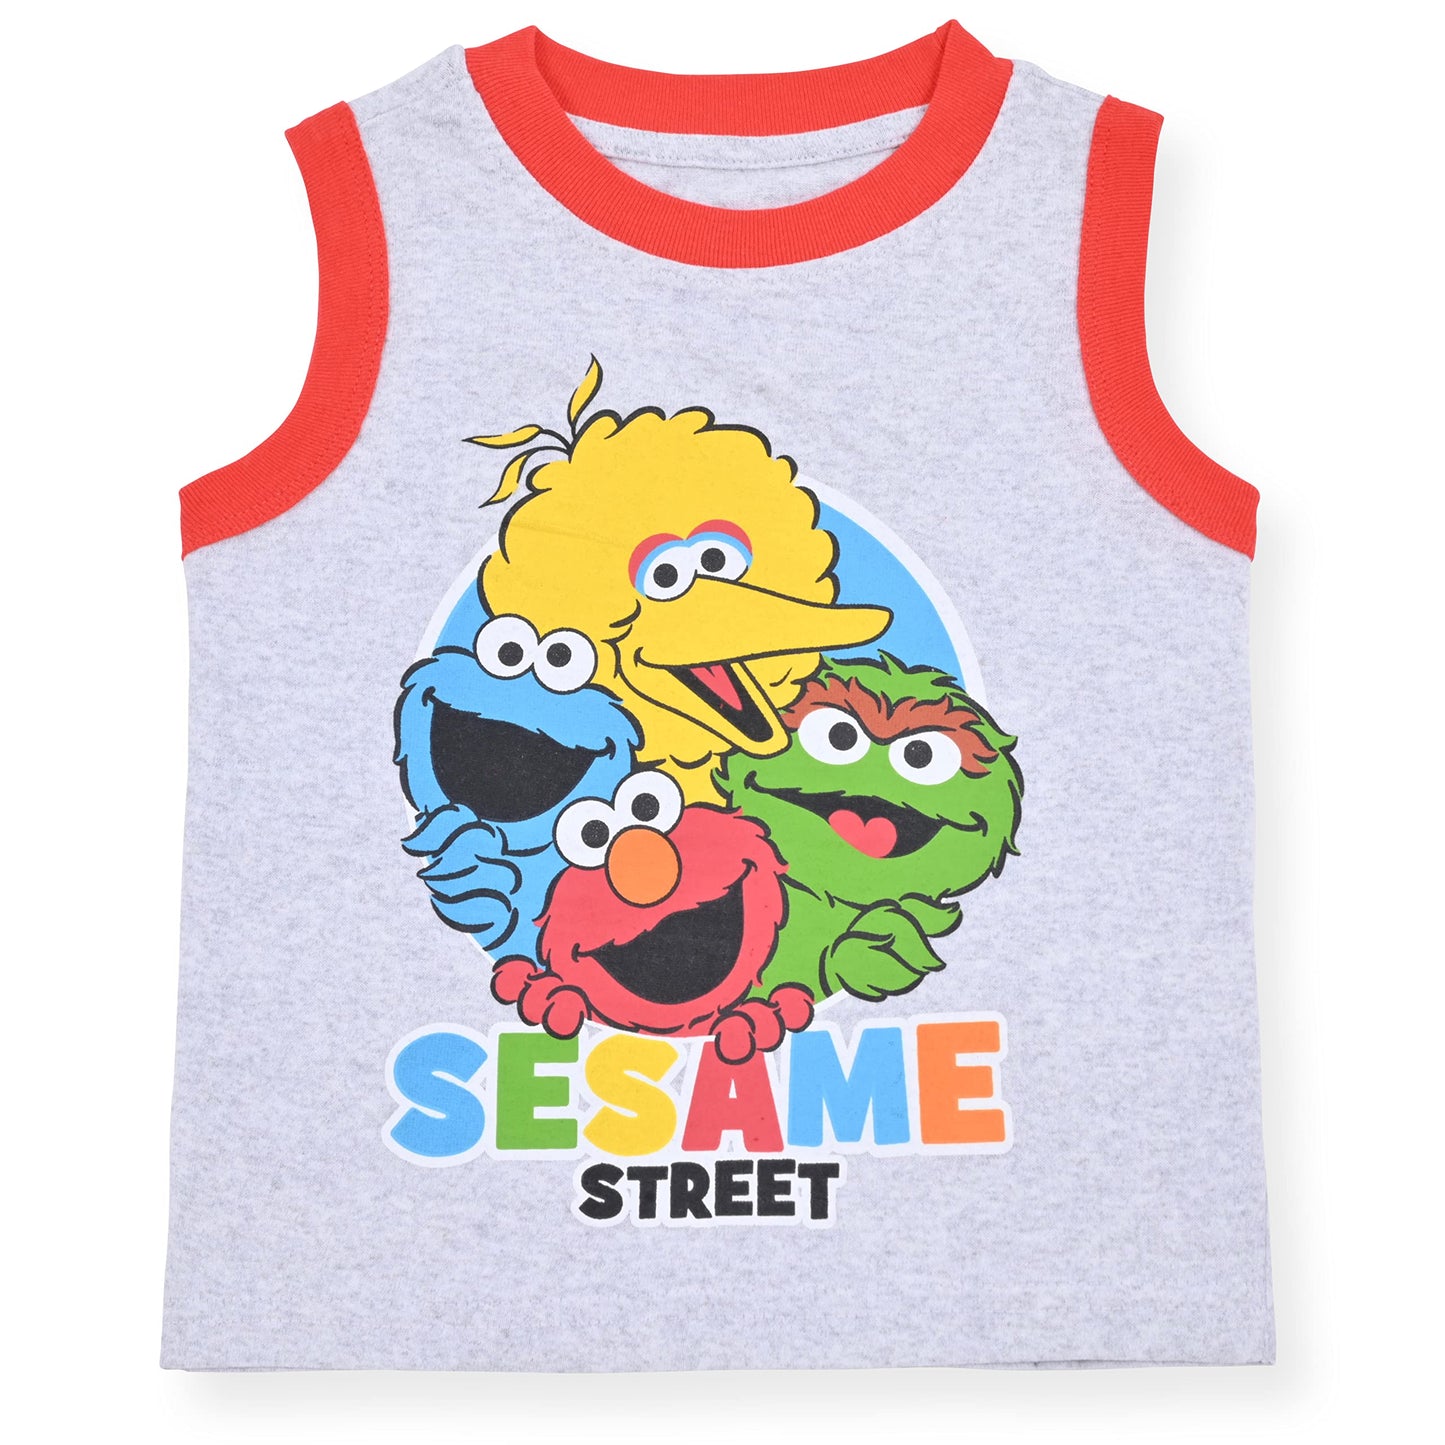 Sesame Street 2 Pack Sleeveless Tee Shirt Set for Boys, Printed Undershirt for Kids